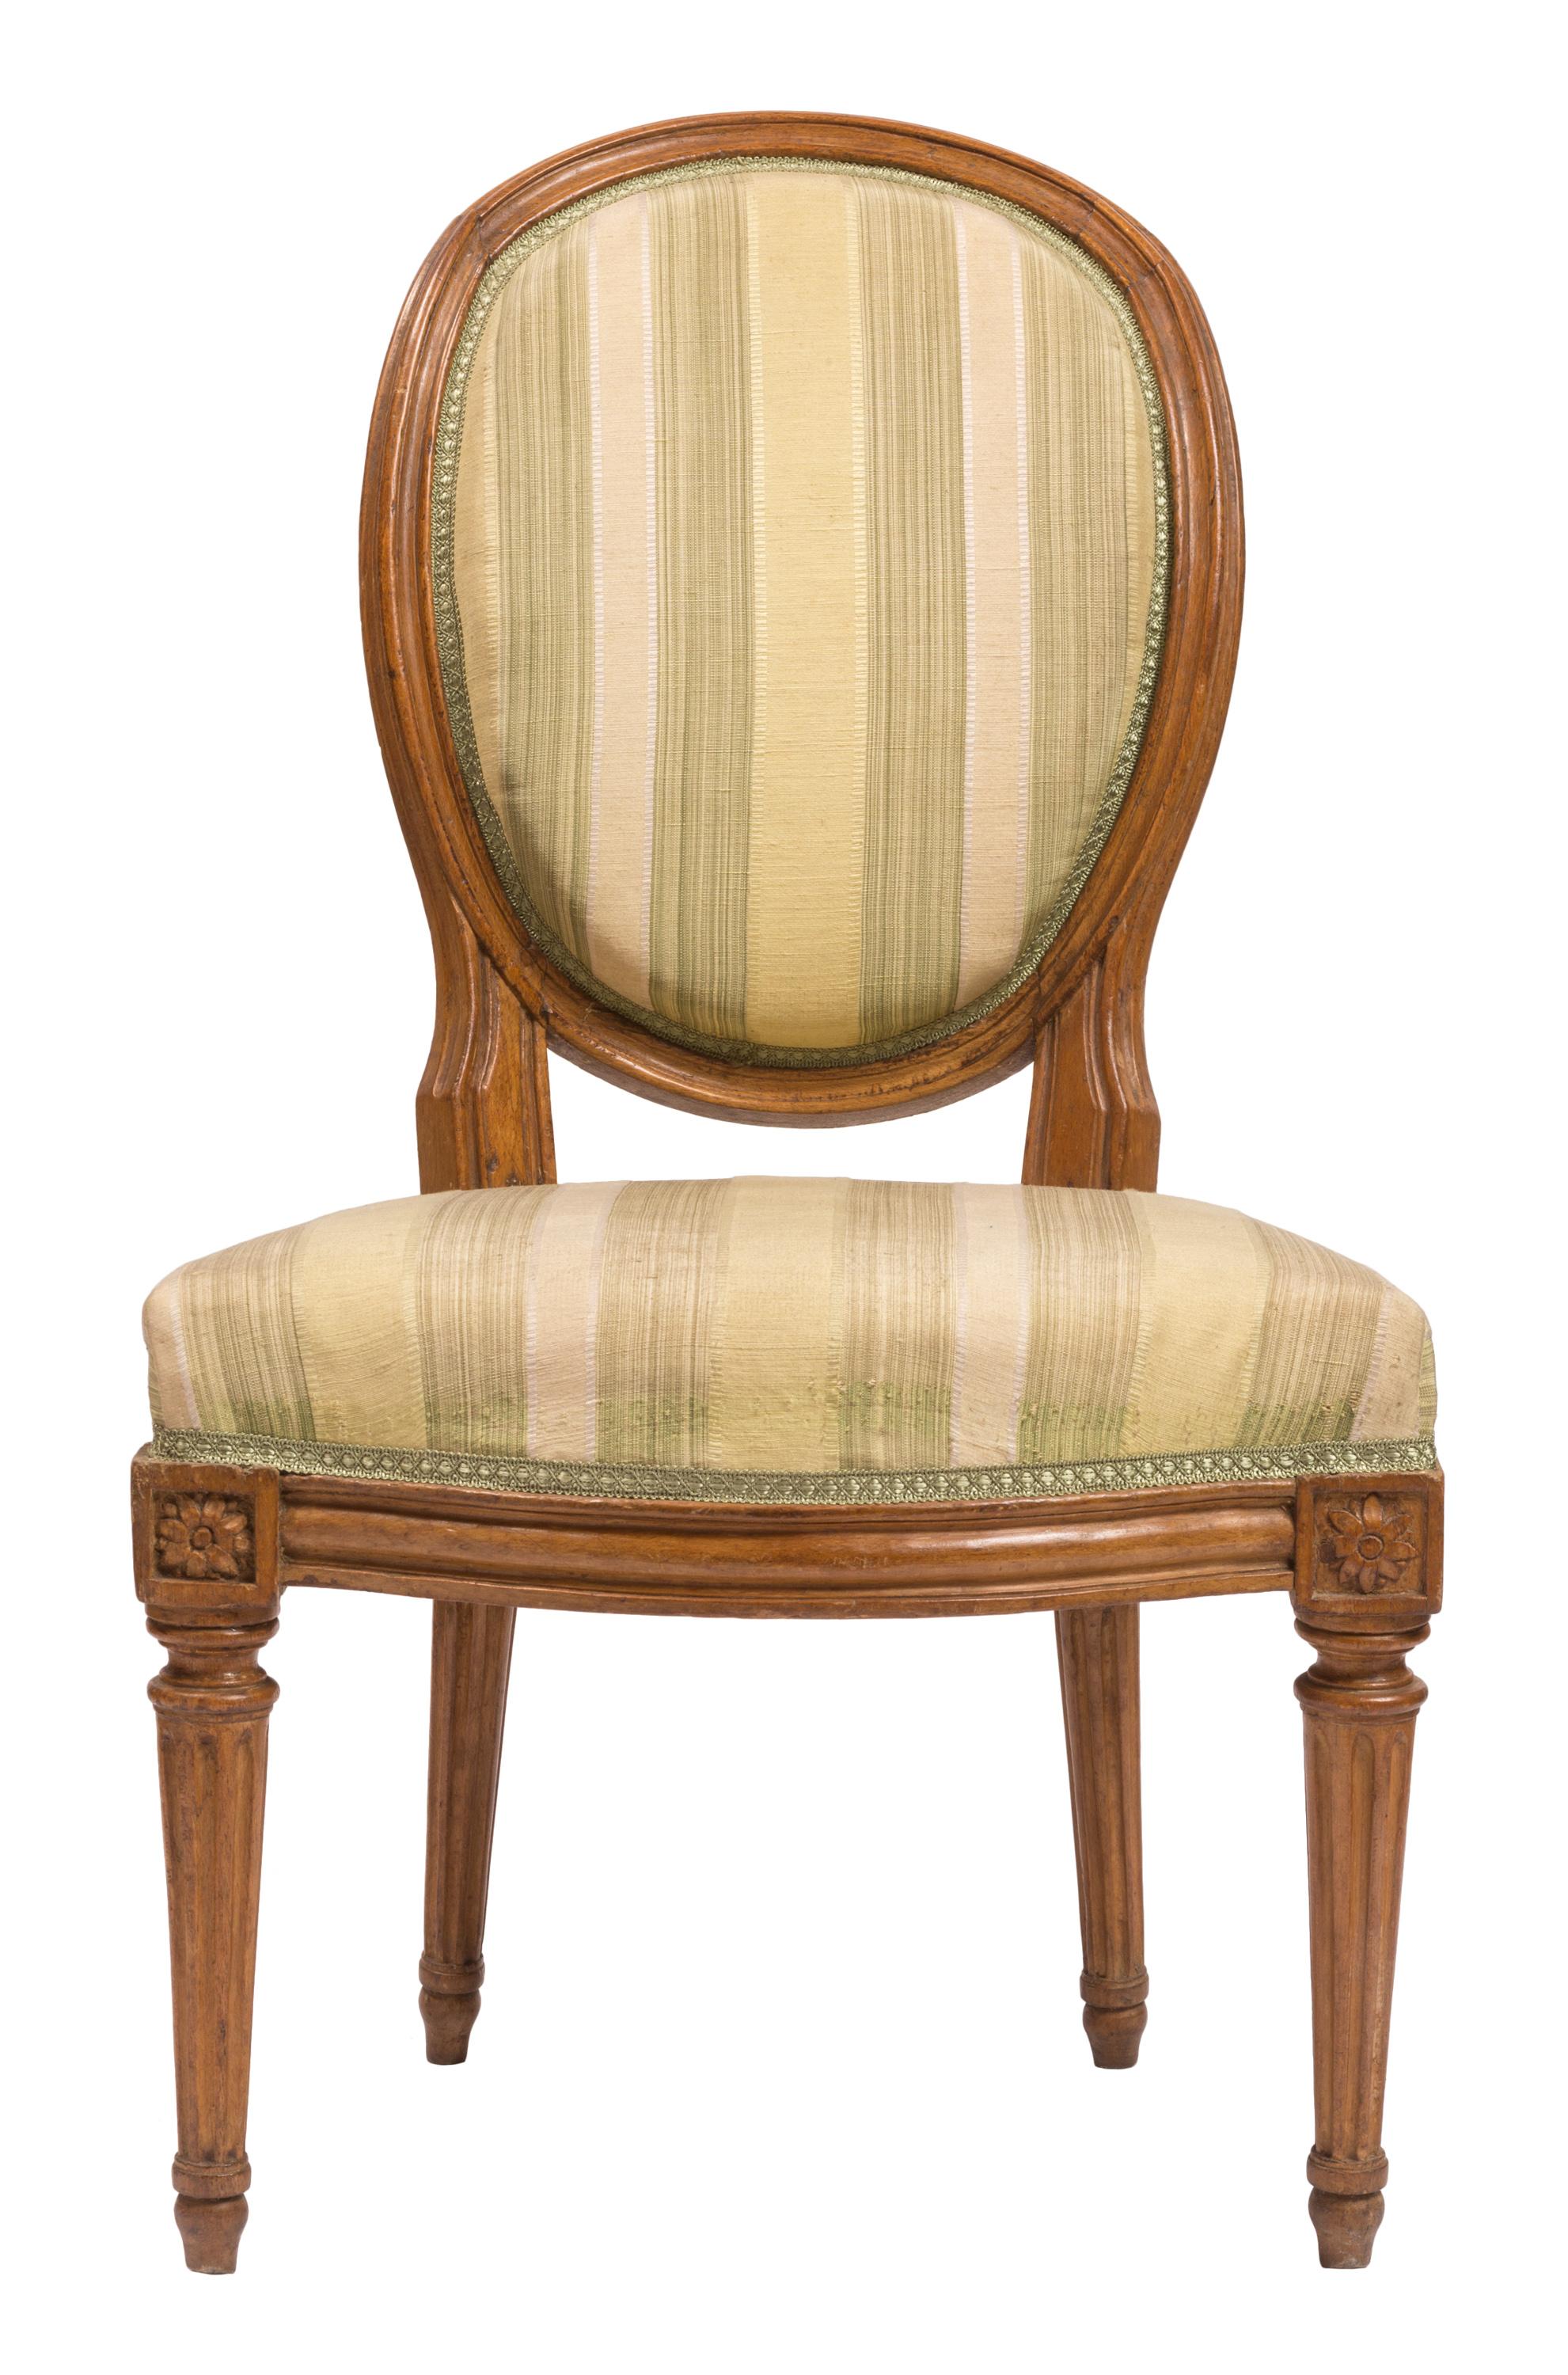 Un ensemble assorti de chaises de salle à manger ou d'appoint de style Louis XVI du 19ème siècle avec des meubles en noyer, des rosettes florales joliment sculptées, et une tapisserie neuve en soie rayée crème et vert clair. Une silhouette classique